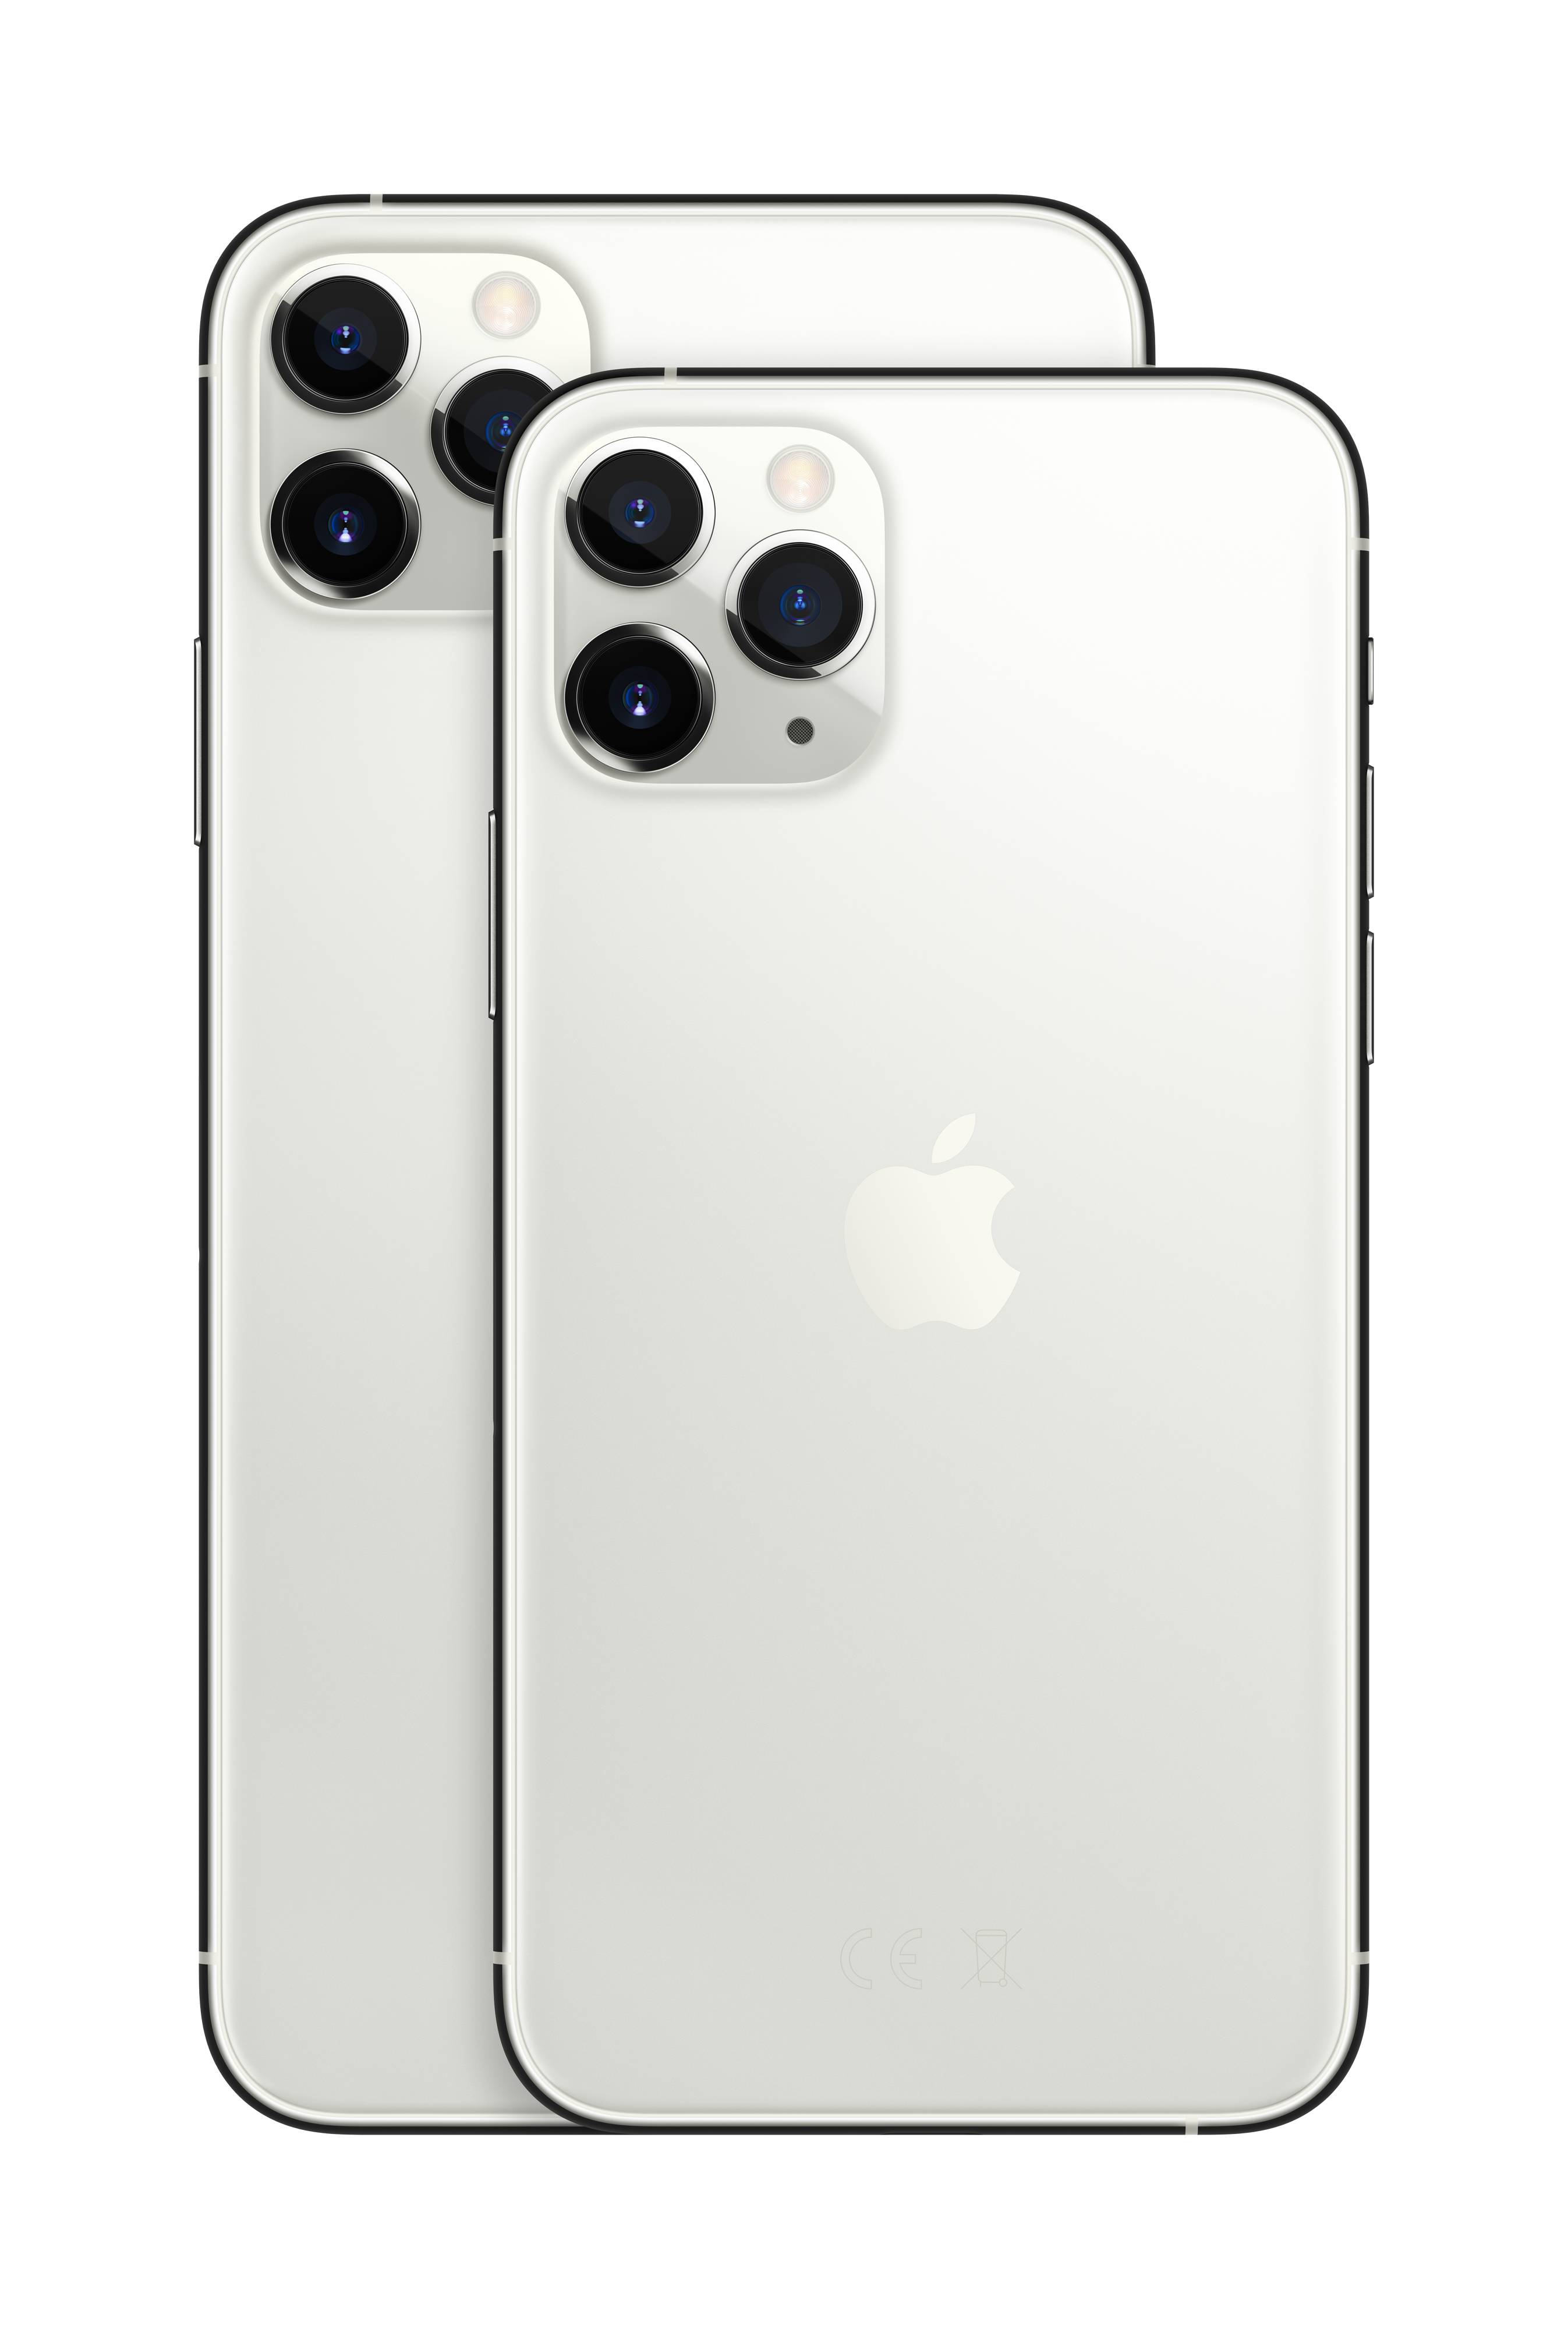 Apple iPhone 11 Pro Max iPhone 512 GB 6.5 inch (16.5 cm) iOS 13 12 MP